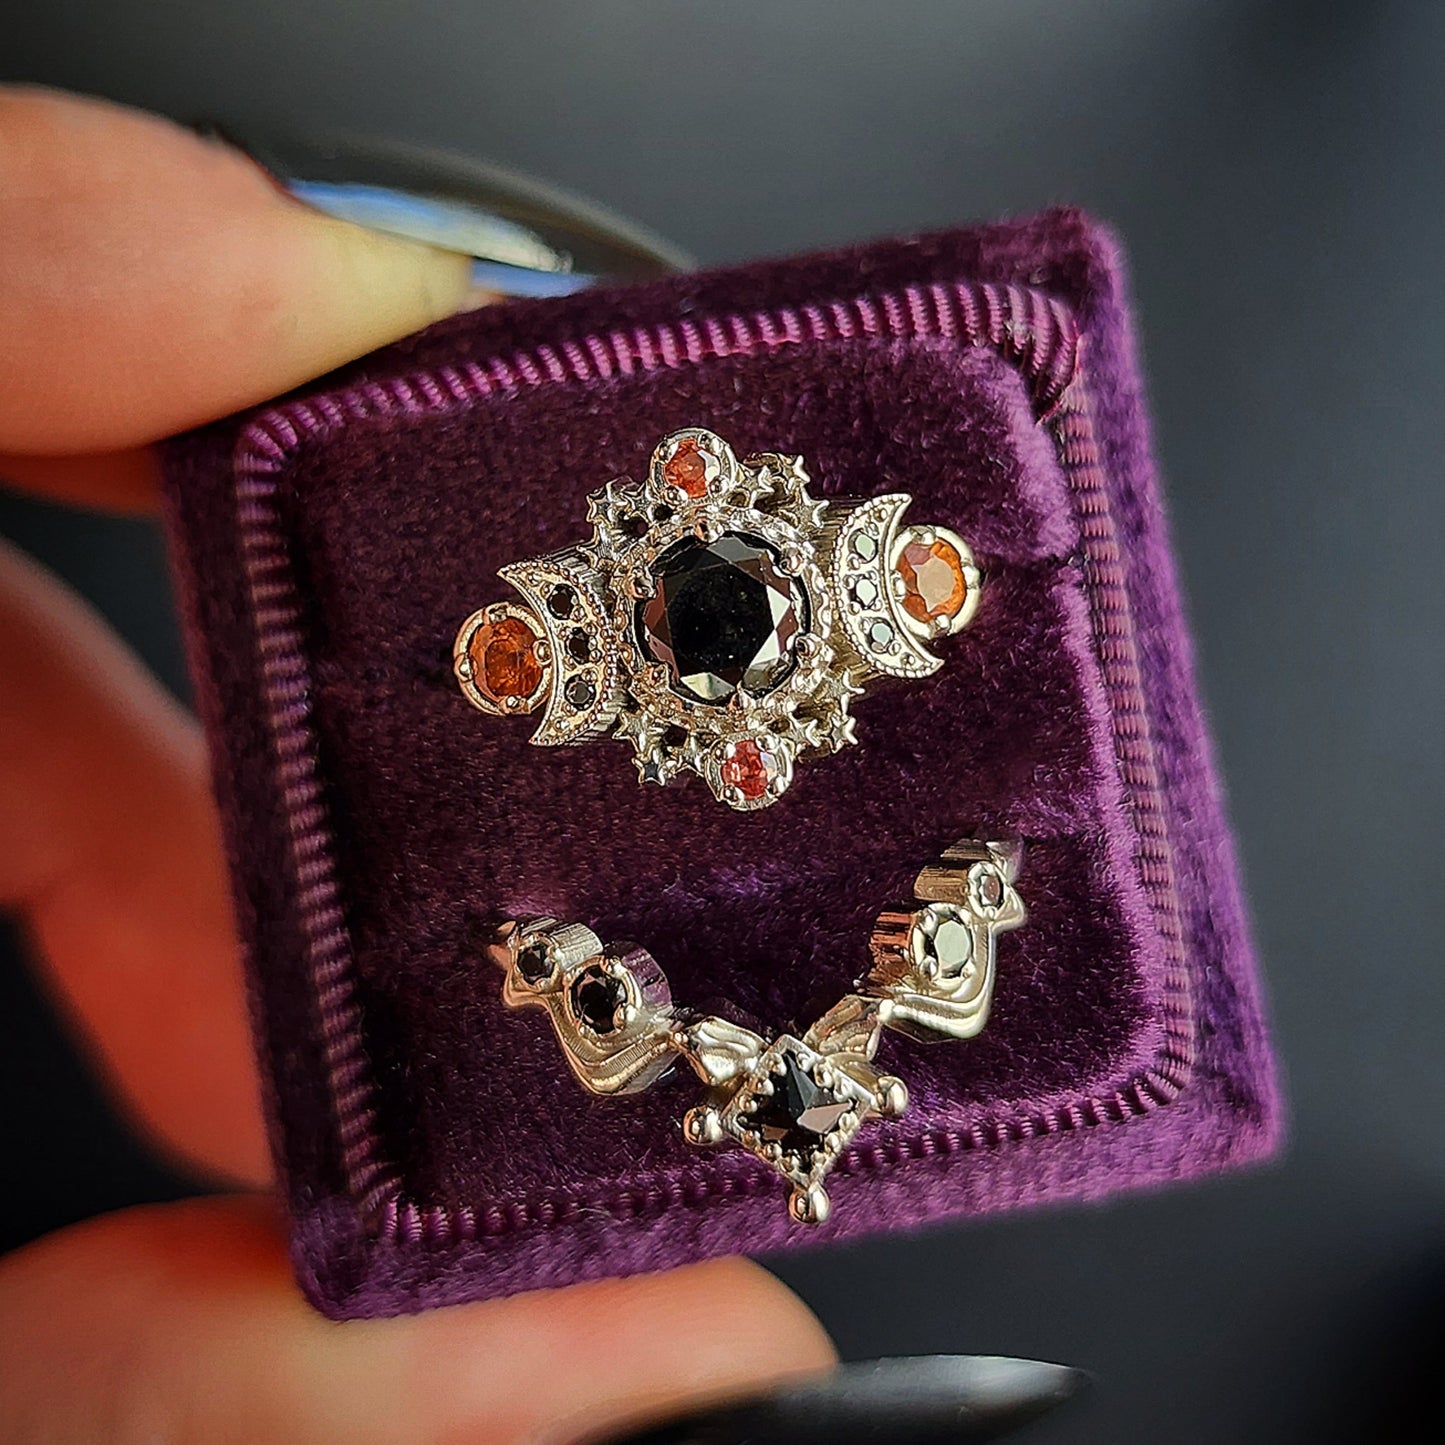 black diamond cosmos ring orange sapphire gothic engagement snake wedding band